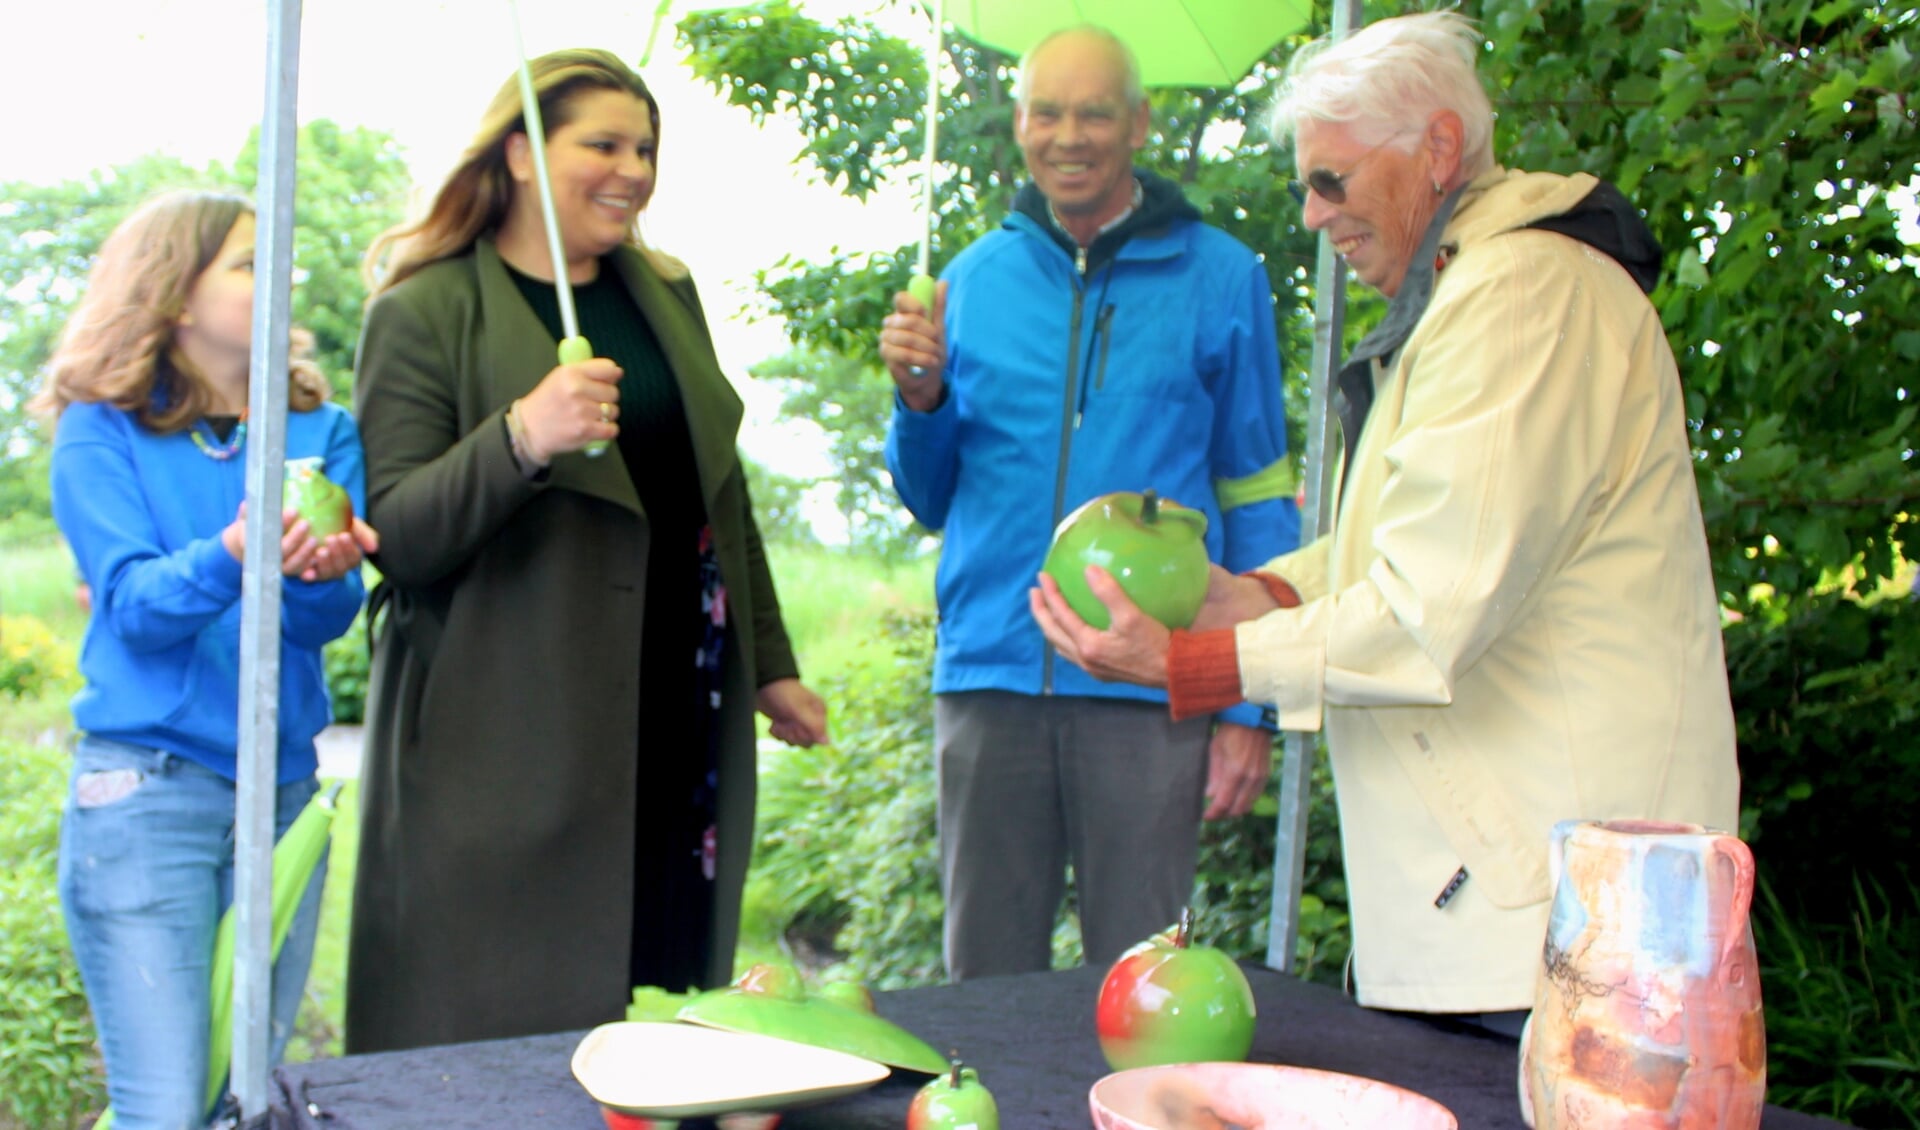 Wethouder Anouk Noordermeer, op Kunst & Groen rondgeleid door organisator Jos van Lint, bewondert de keramiek appels 'Schone van Boskoop', van kunstenares Els de Jong. 